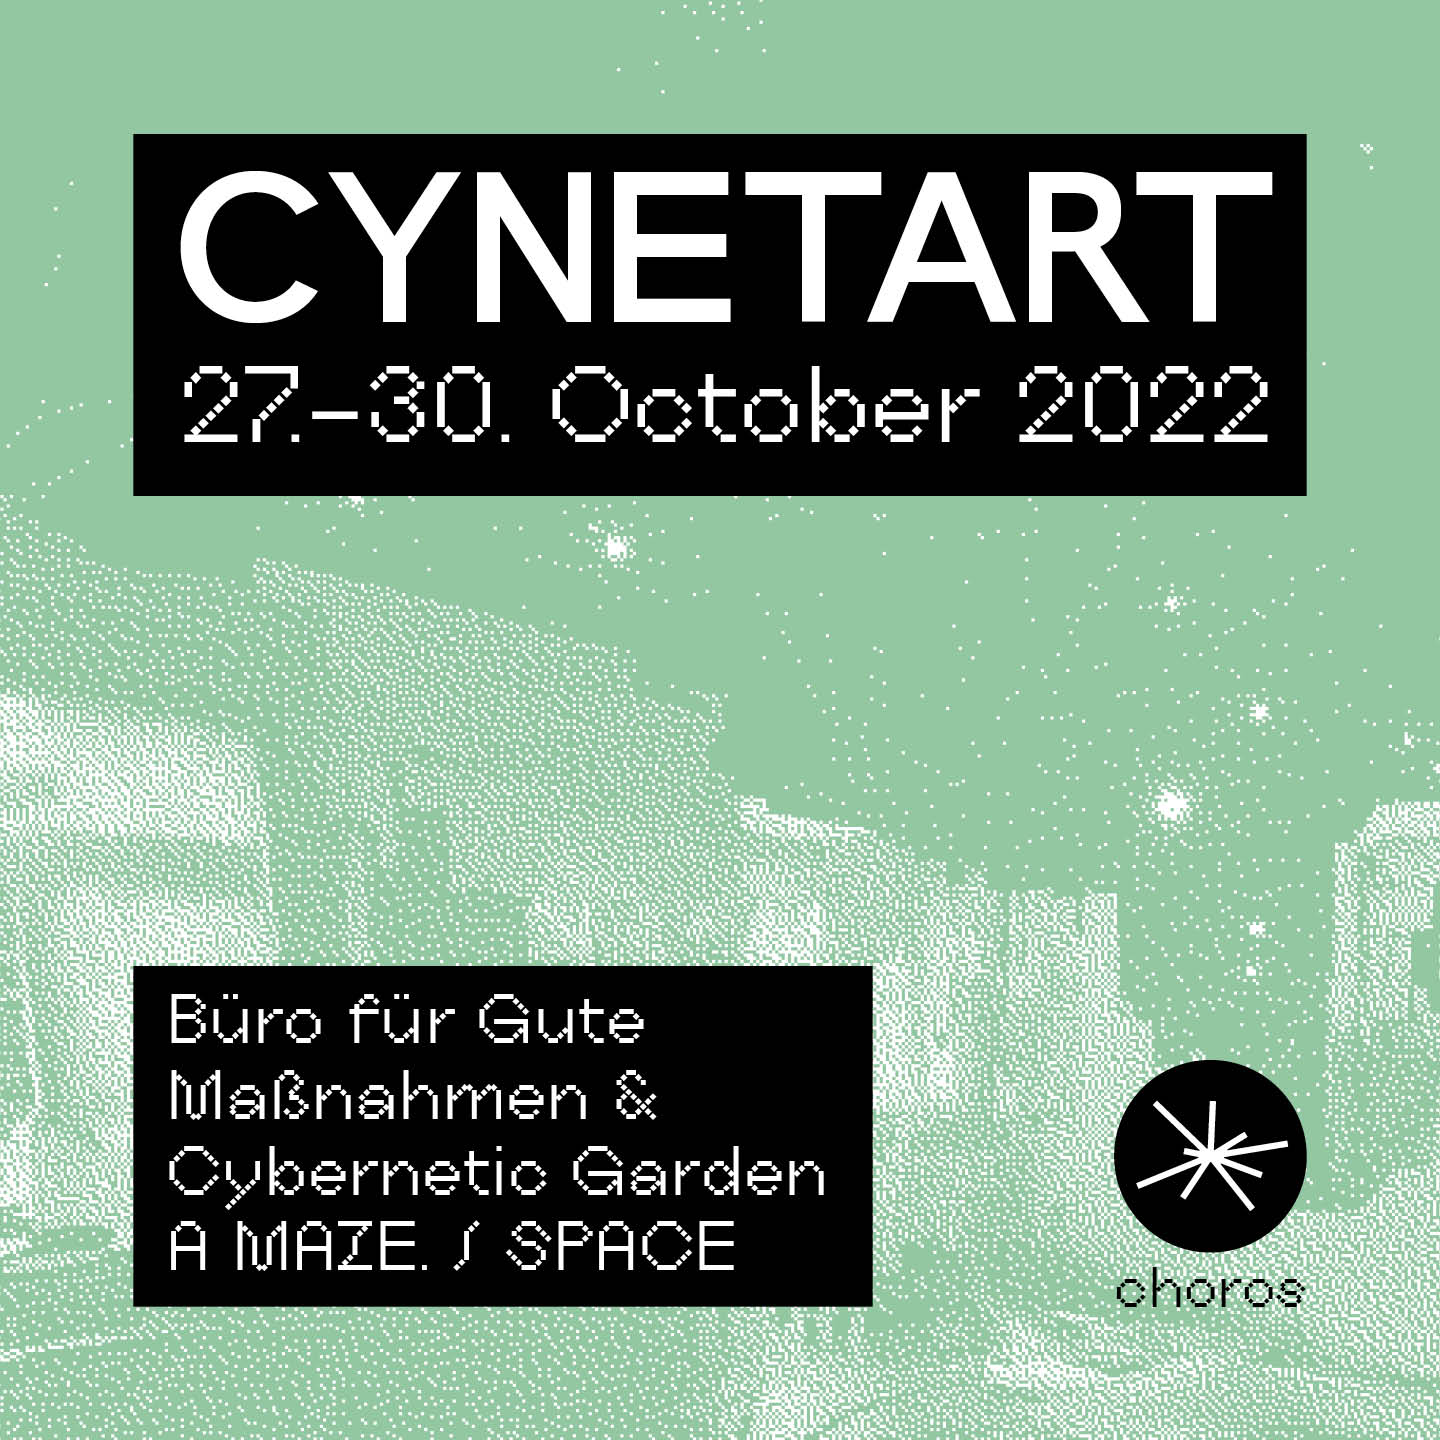 CYNETART choros - cybernetic garden